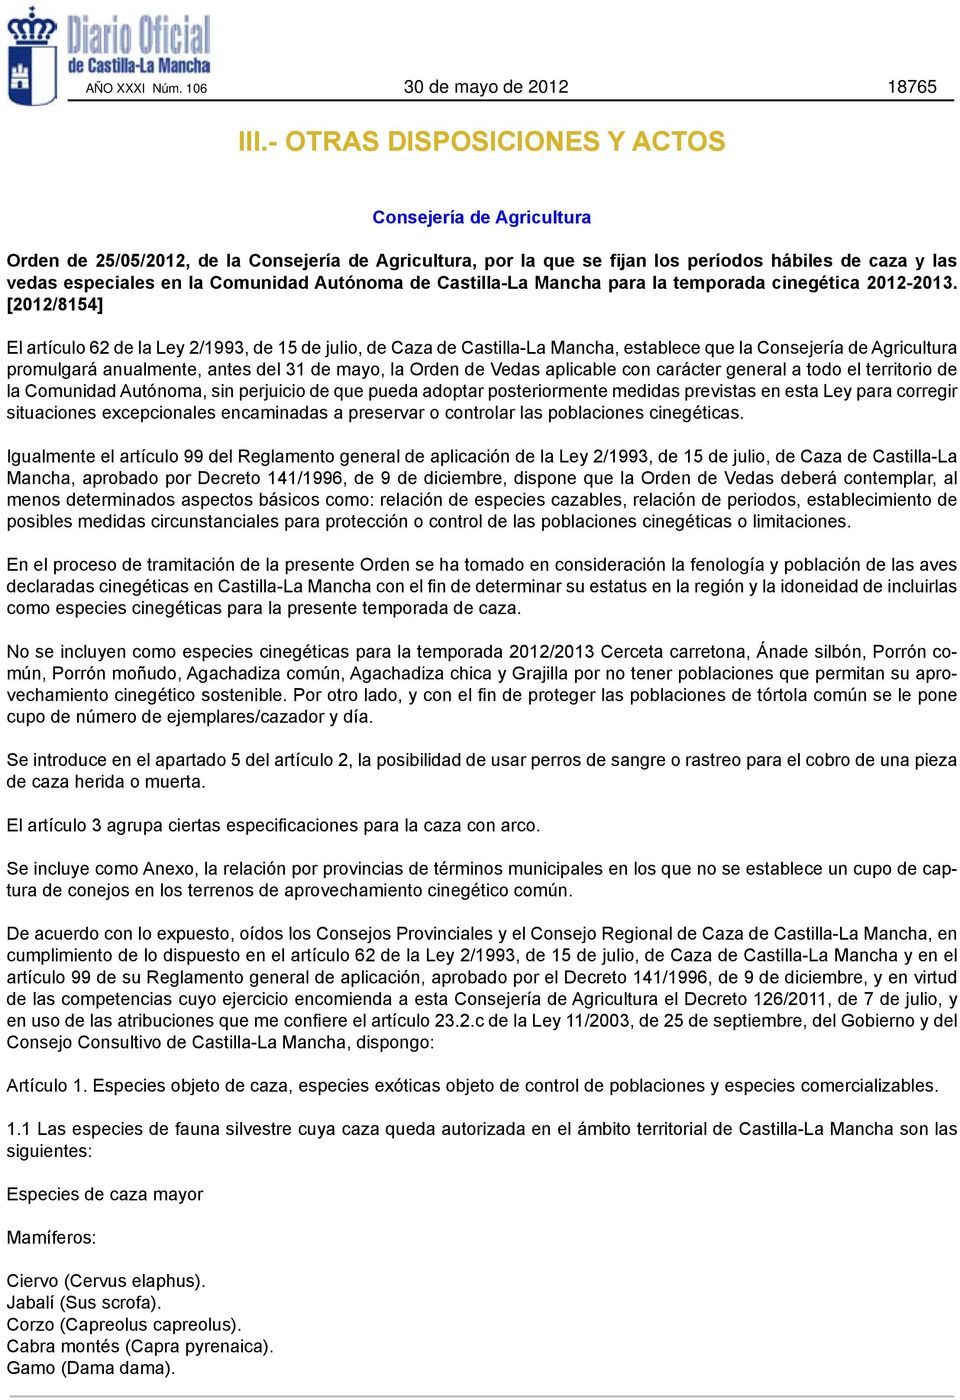 Autónoma de Castilla-La Mancha para la temporada cinegética 2012-2013.